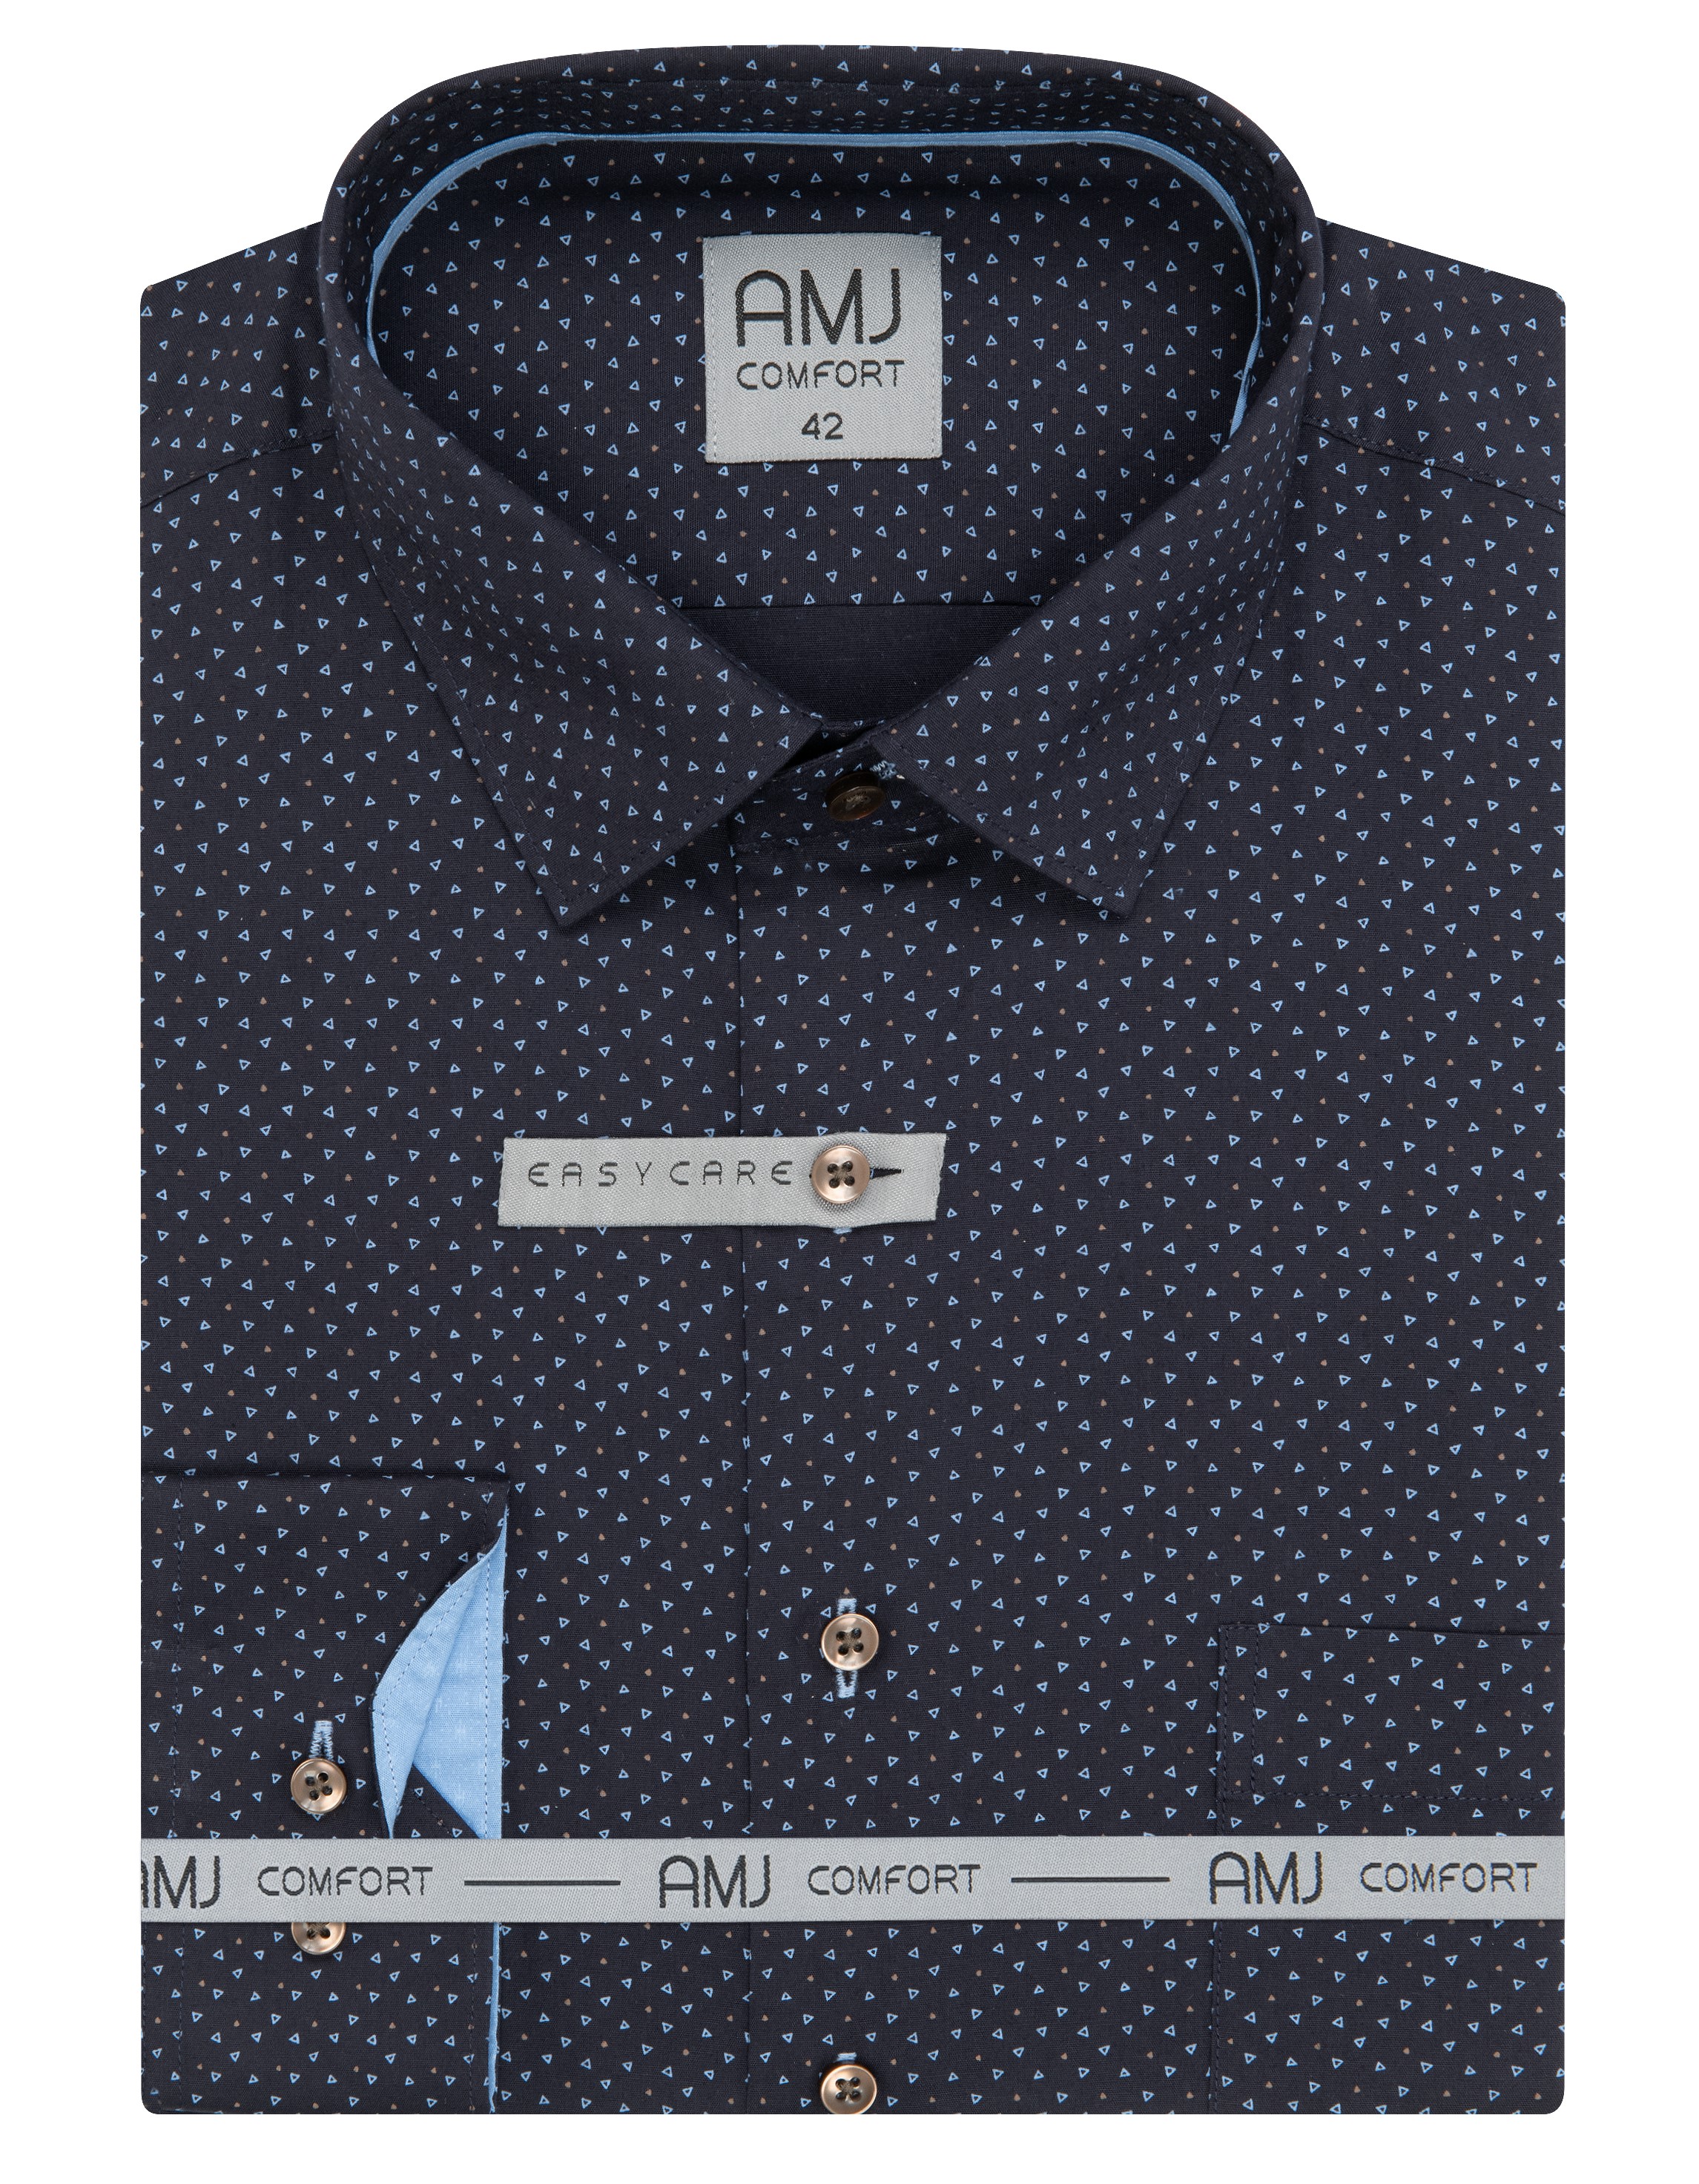 Pánská košile dlouhý rukáv AMJ VDBR 1331 CLASSIC Comfort Velikost: 45